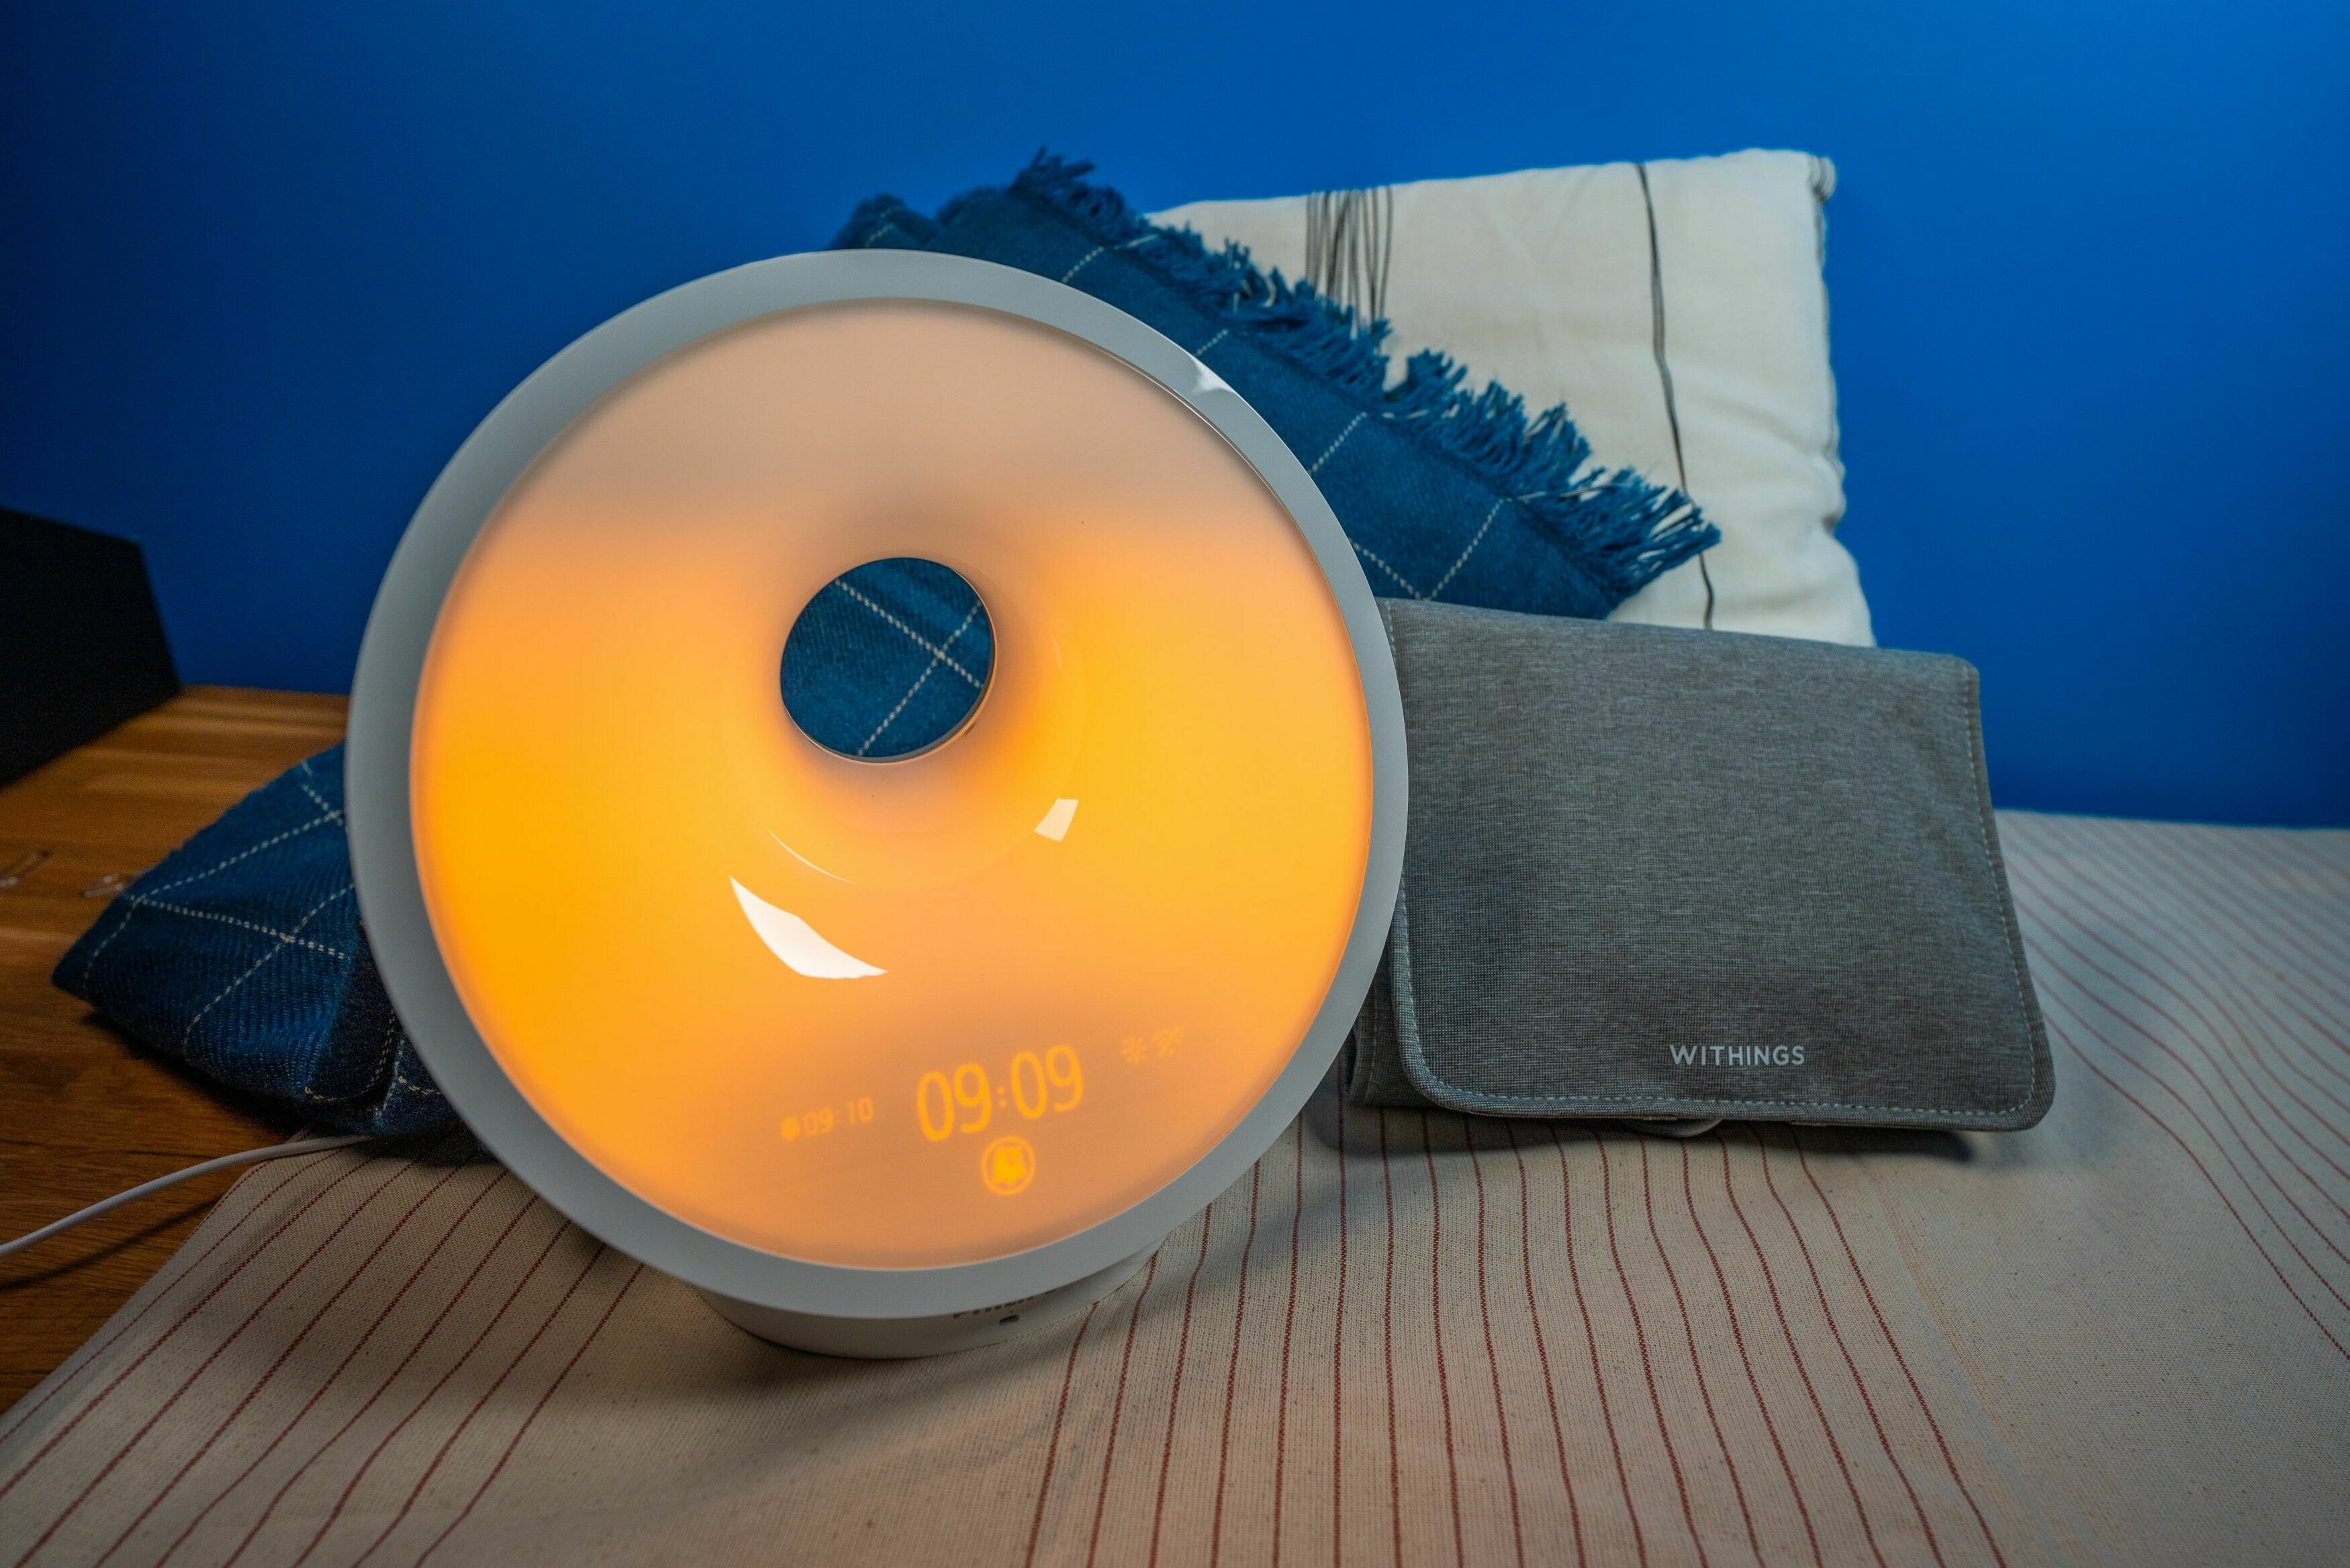 Philips Connected Sleep & Wake-Up Light inklusive Withings Sleep Analyzer. Analysiere deinen Schlaf und lasse dich sanft wecken!